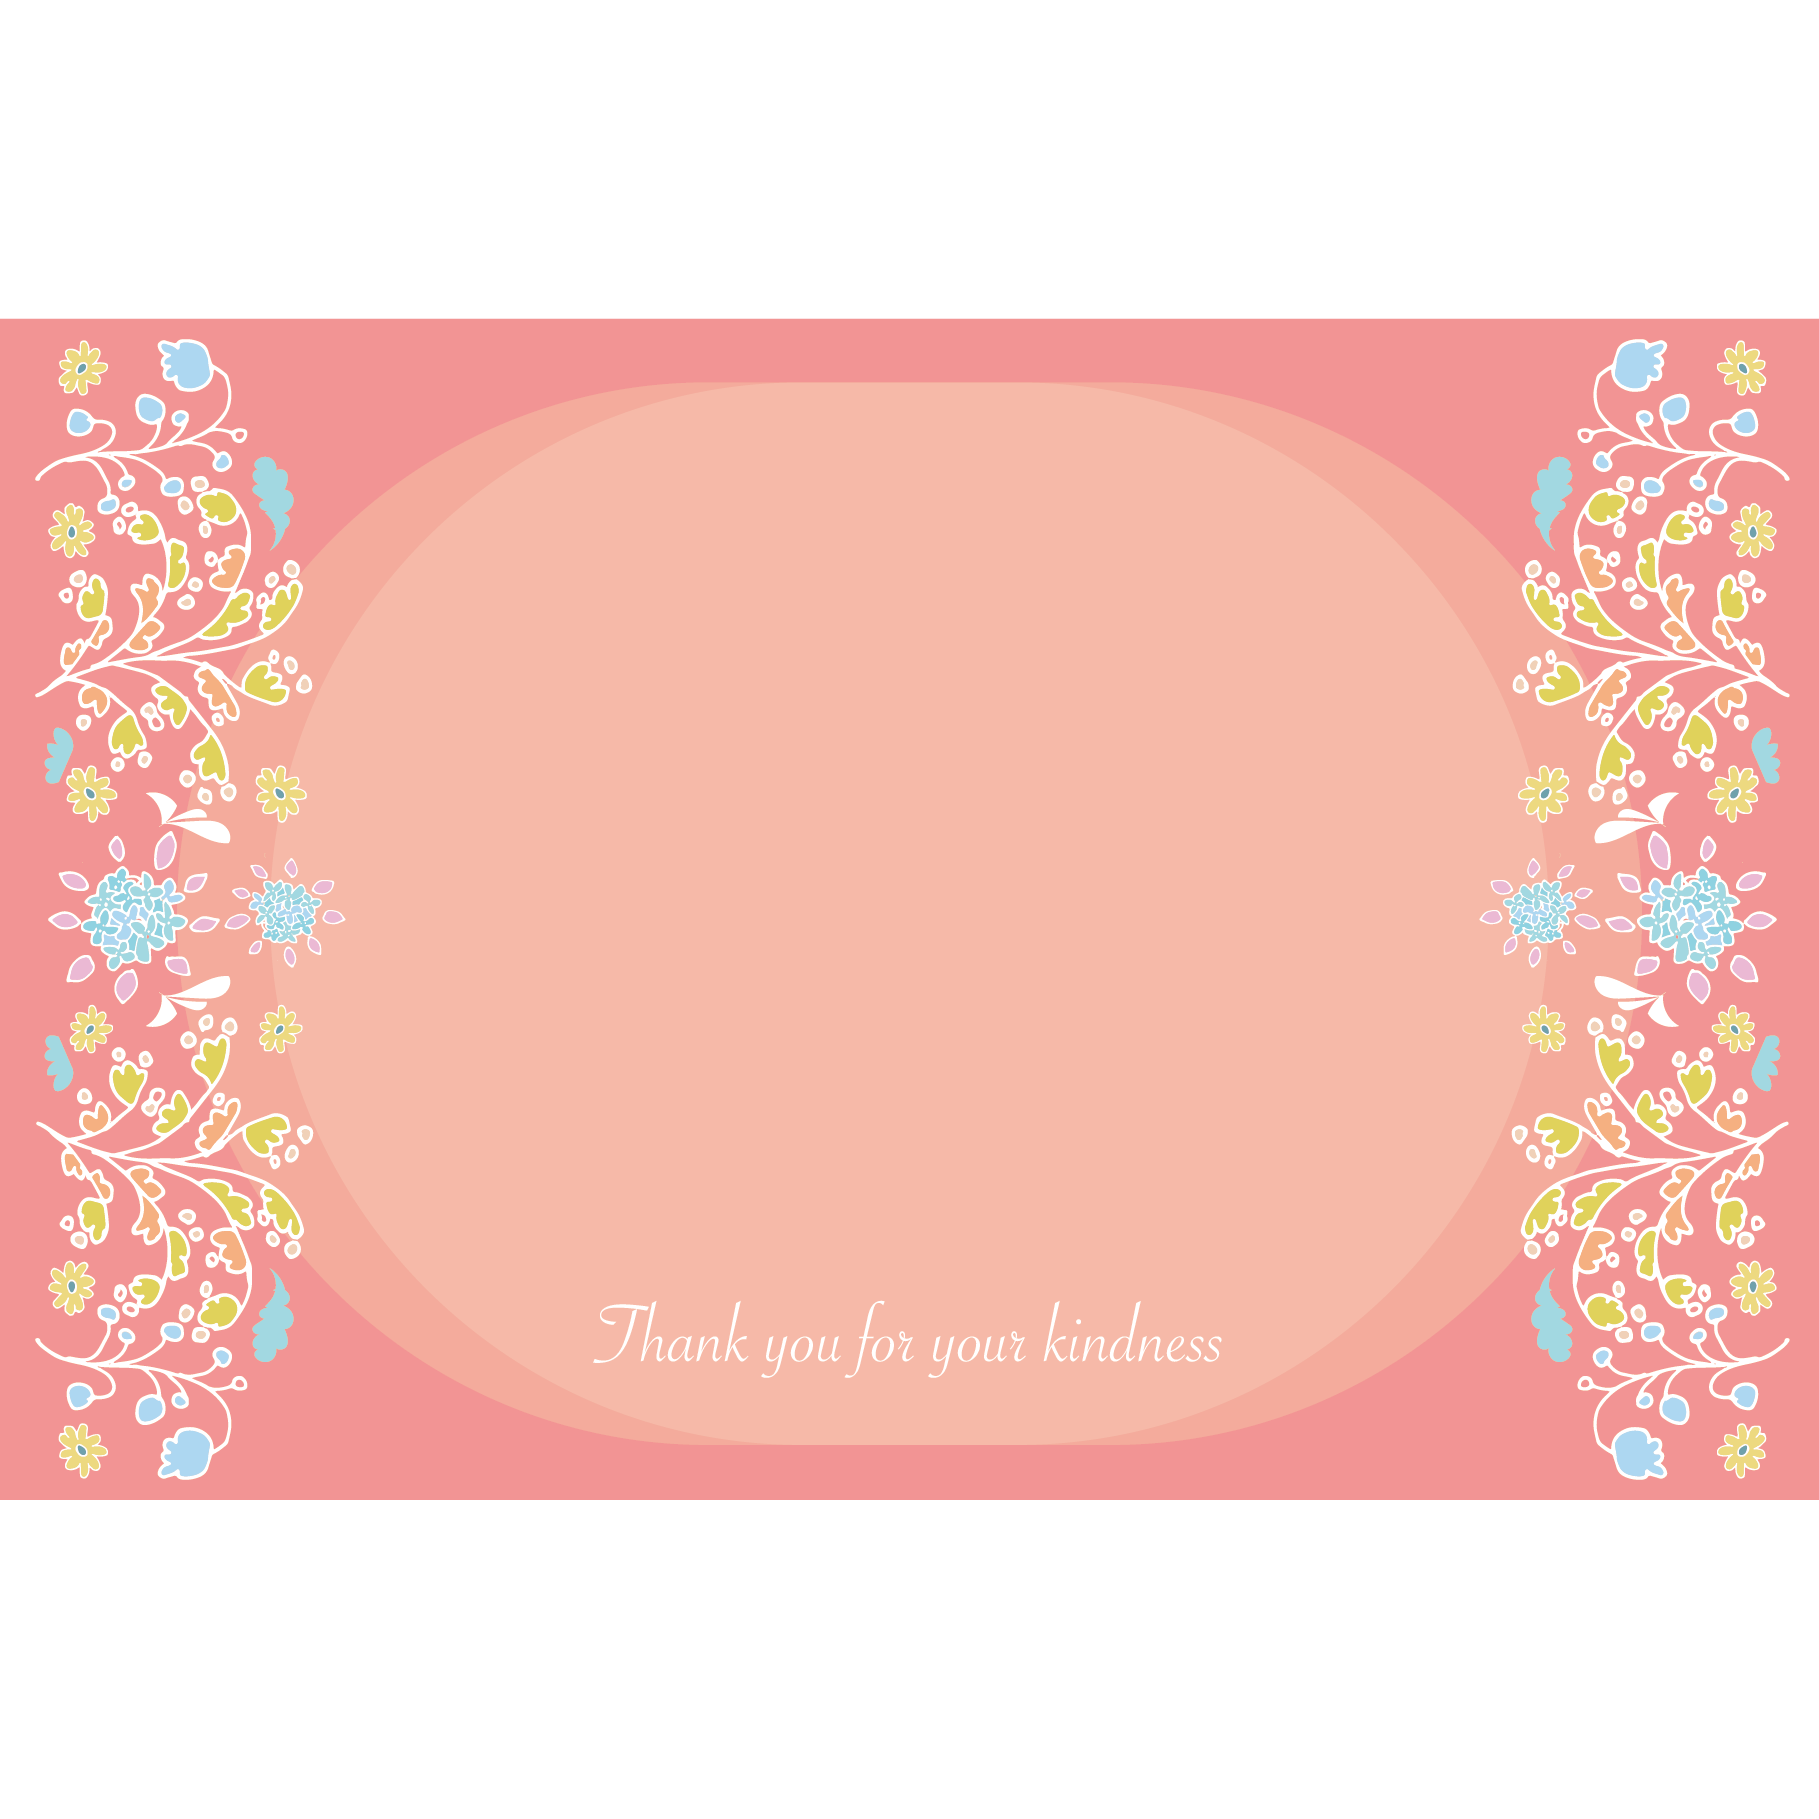 美しい花の画像 75 感謝 カード イラスト 無料